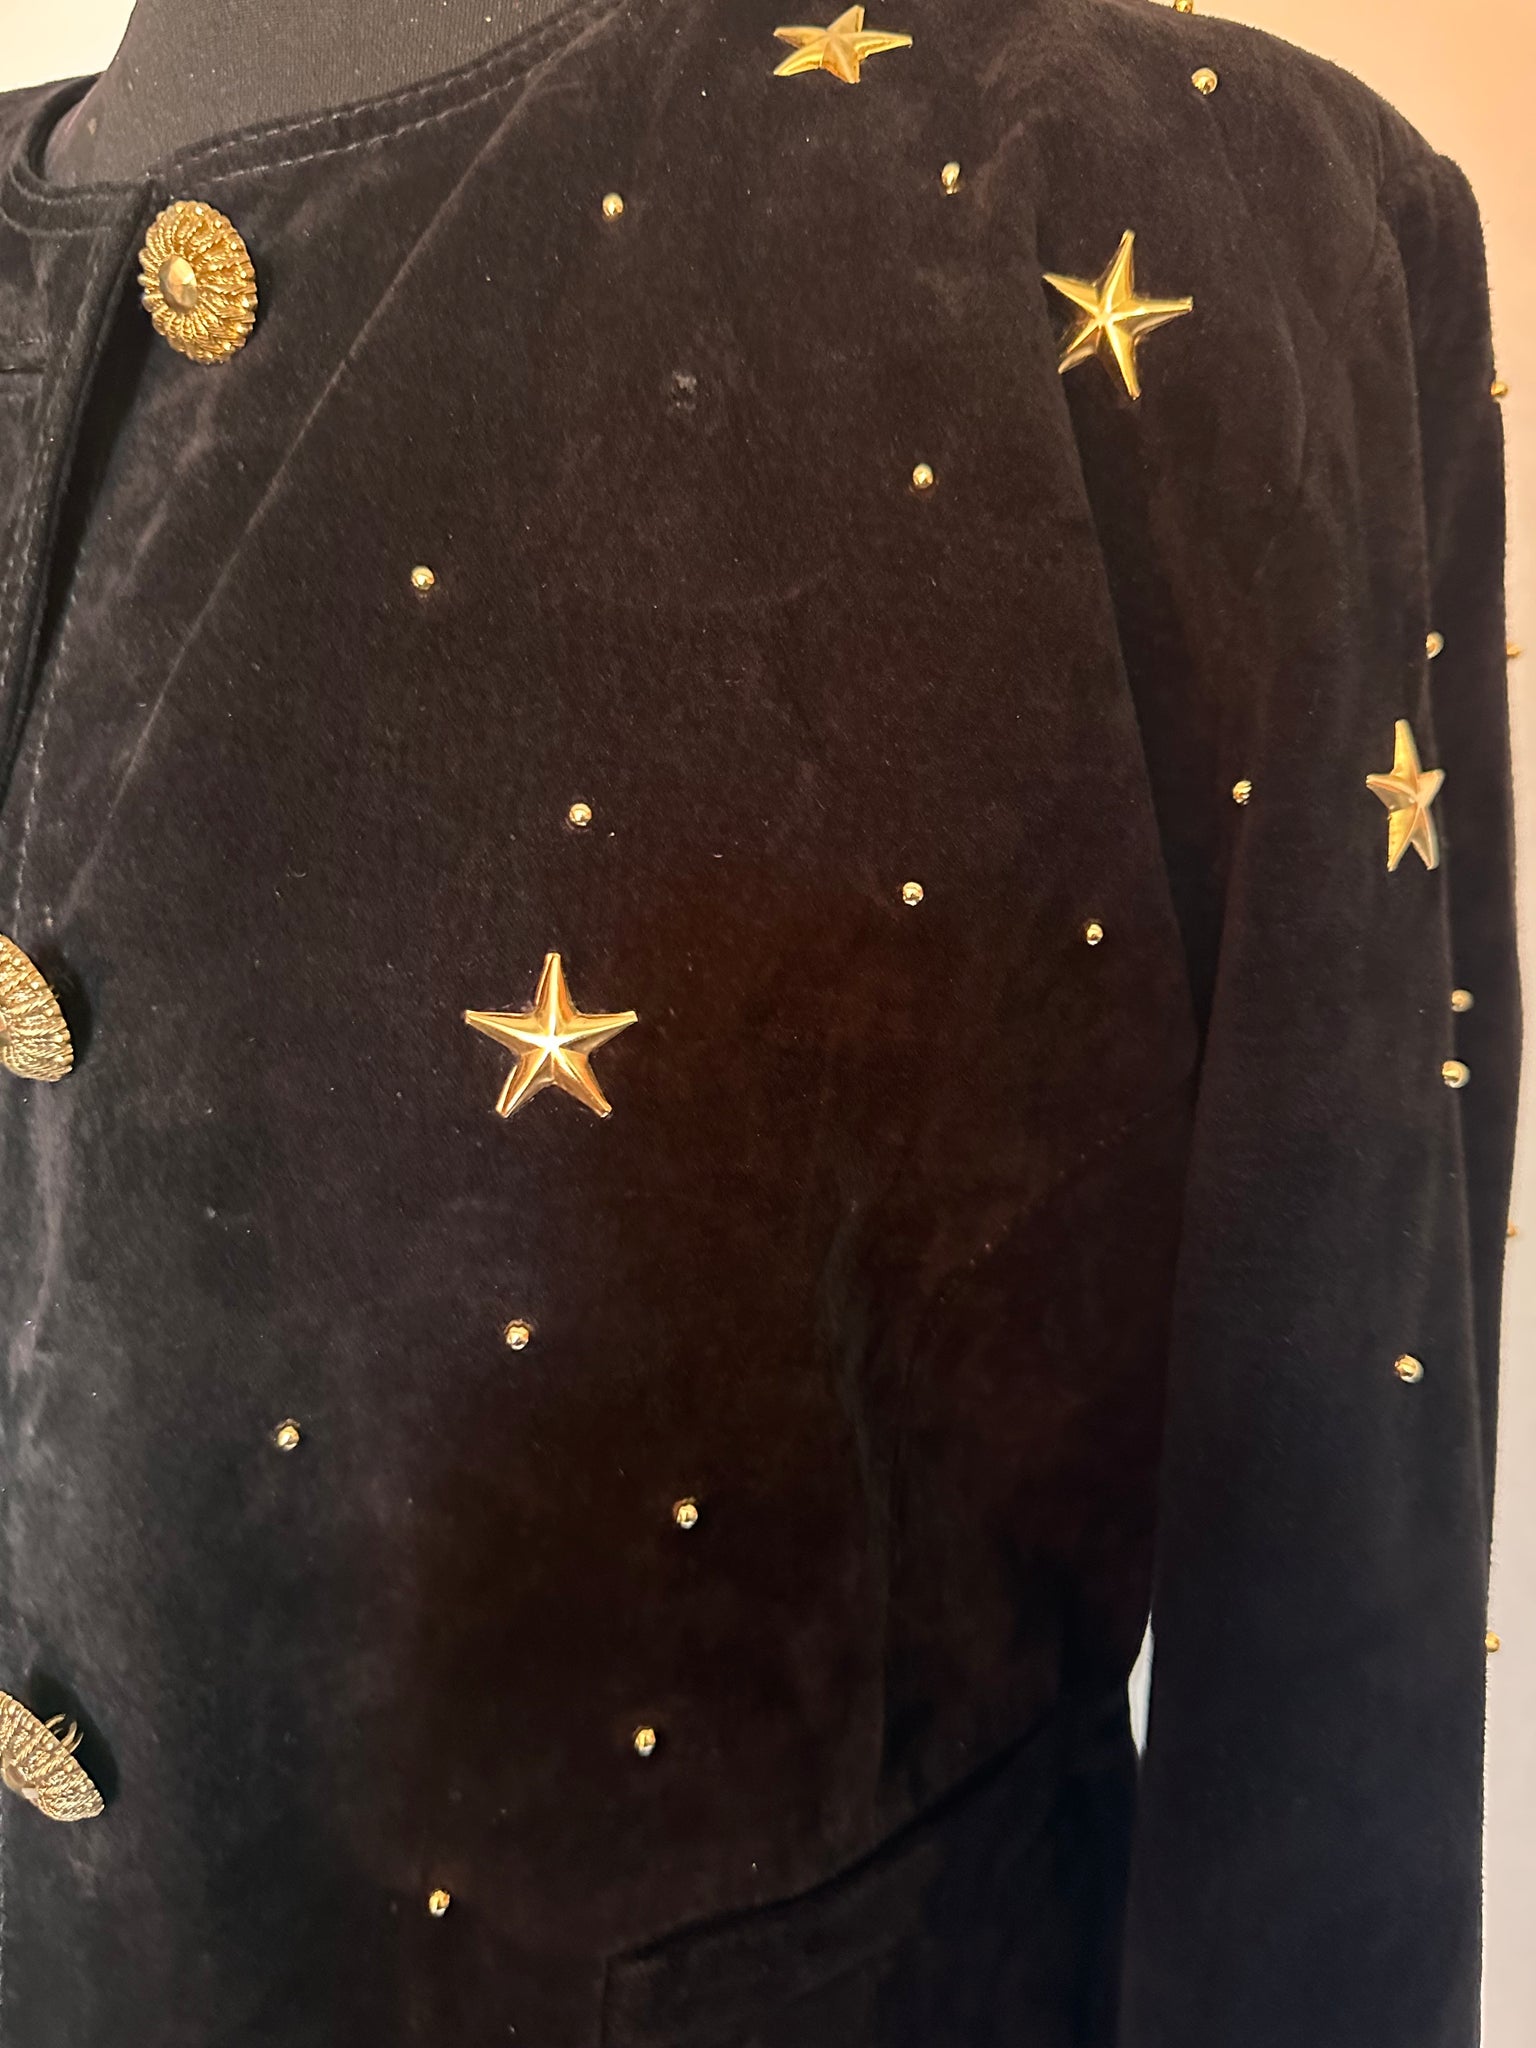 Vintage suede star studded jacket